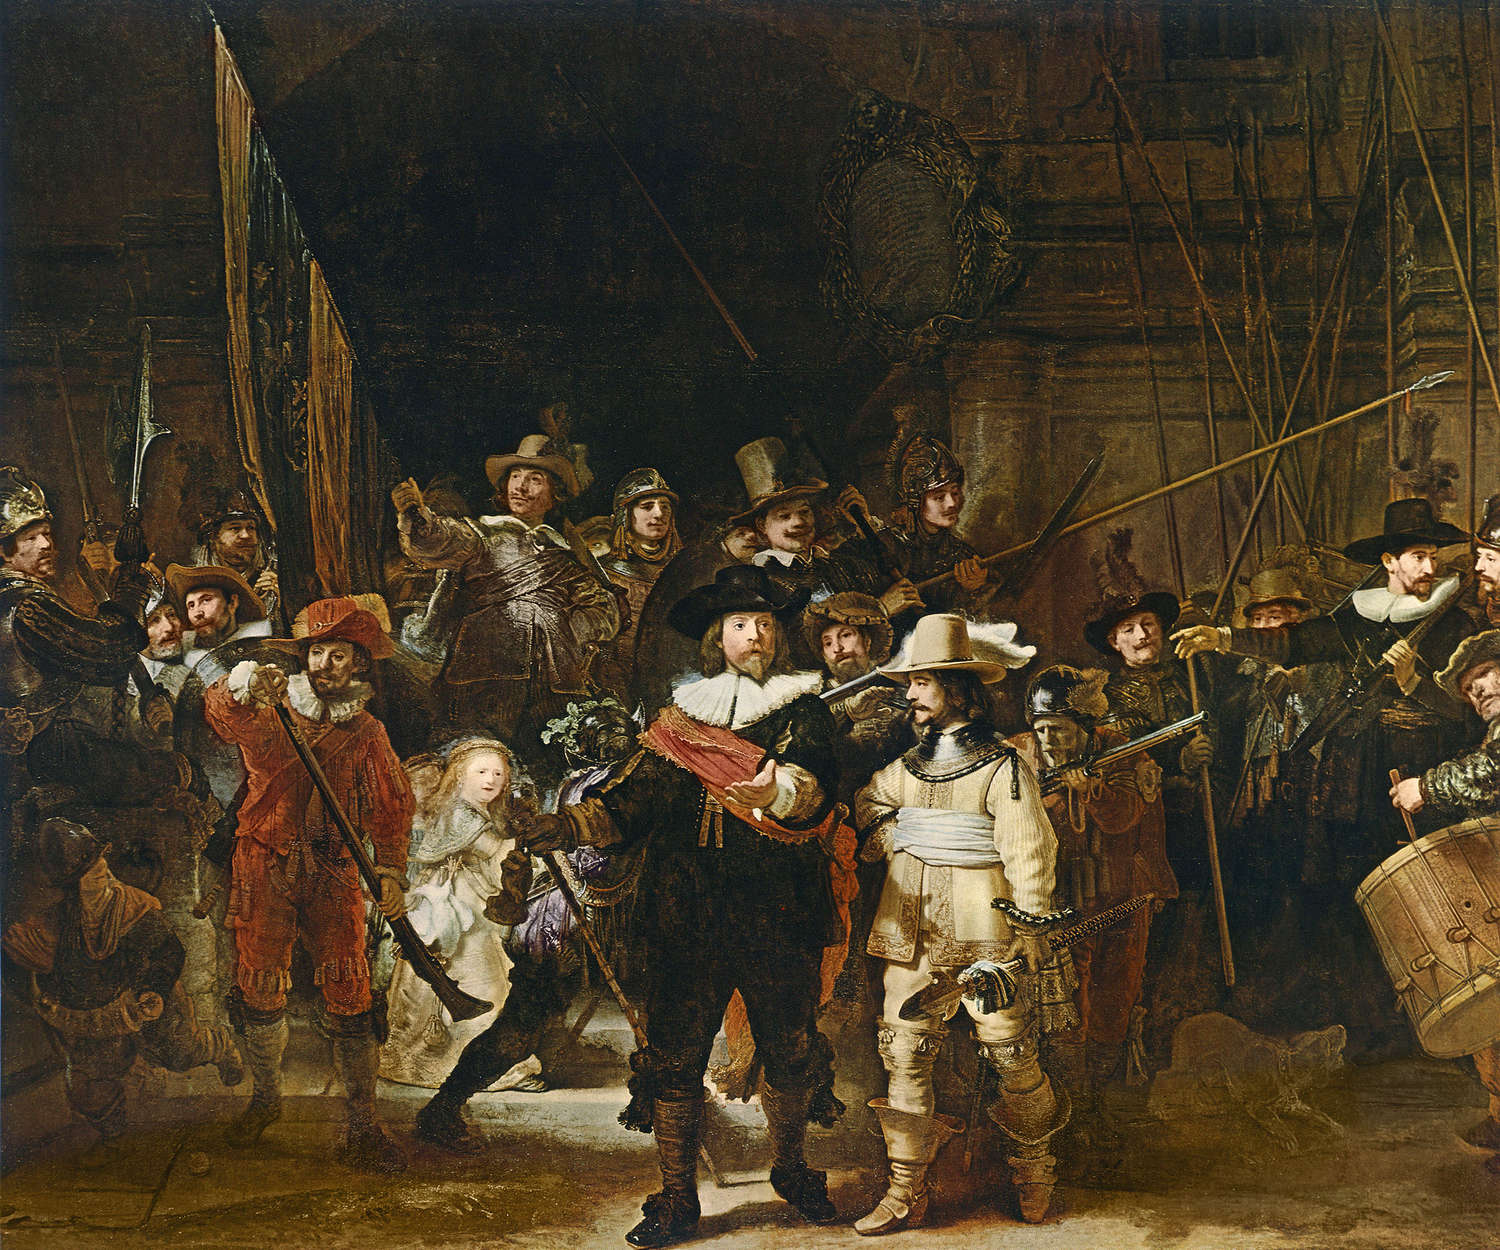             De Nachtwacht" muurschildering van Rembrandt van Rijn
        